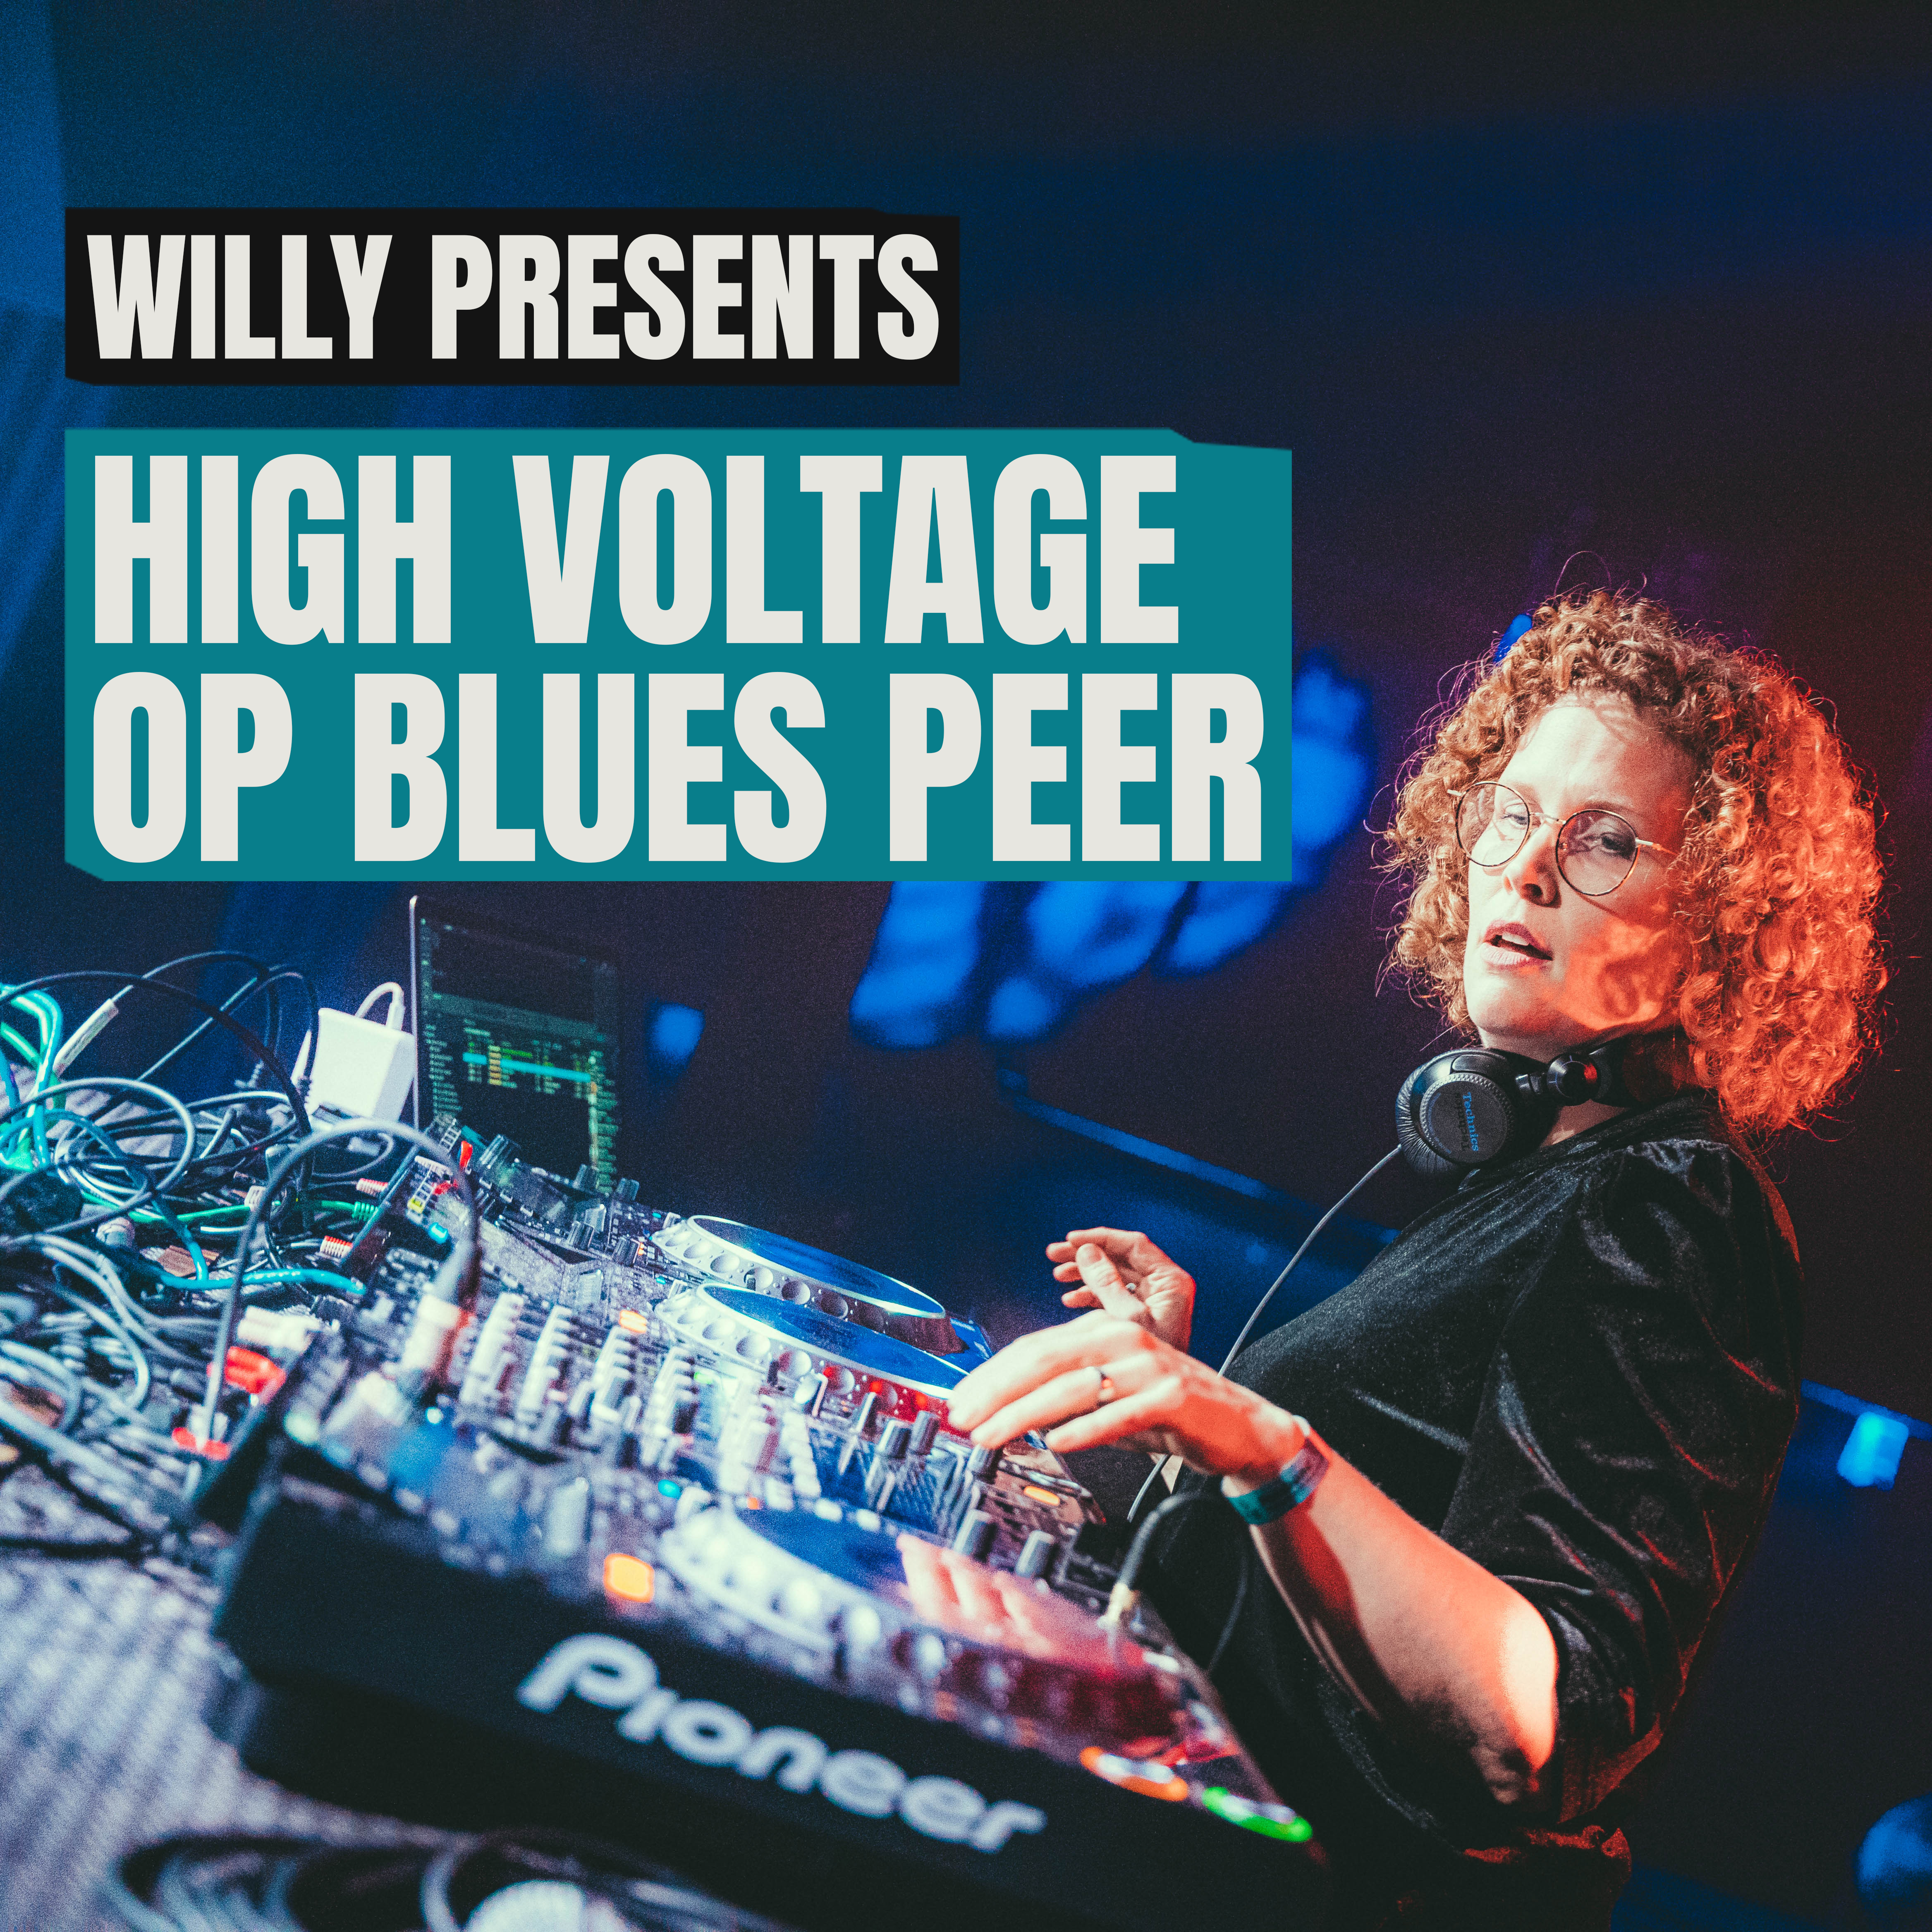 High voltage blues peer v2